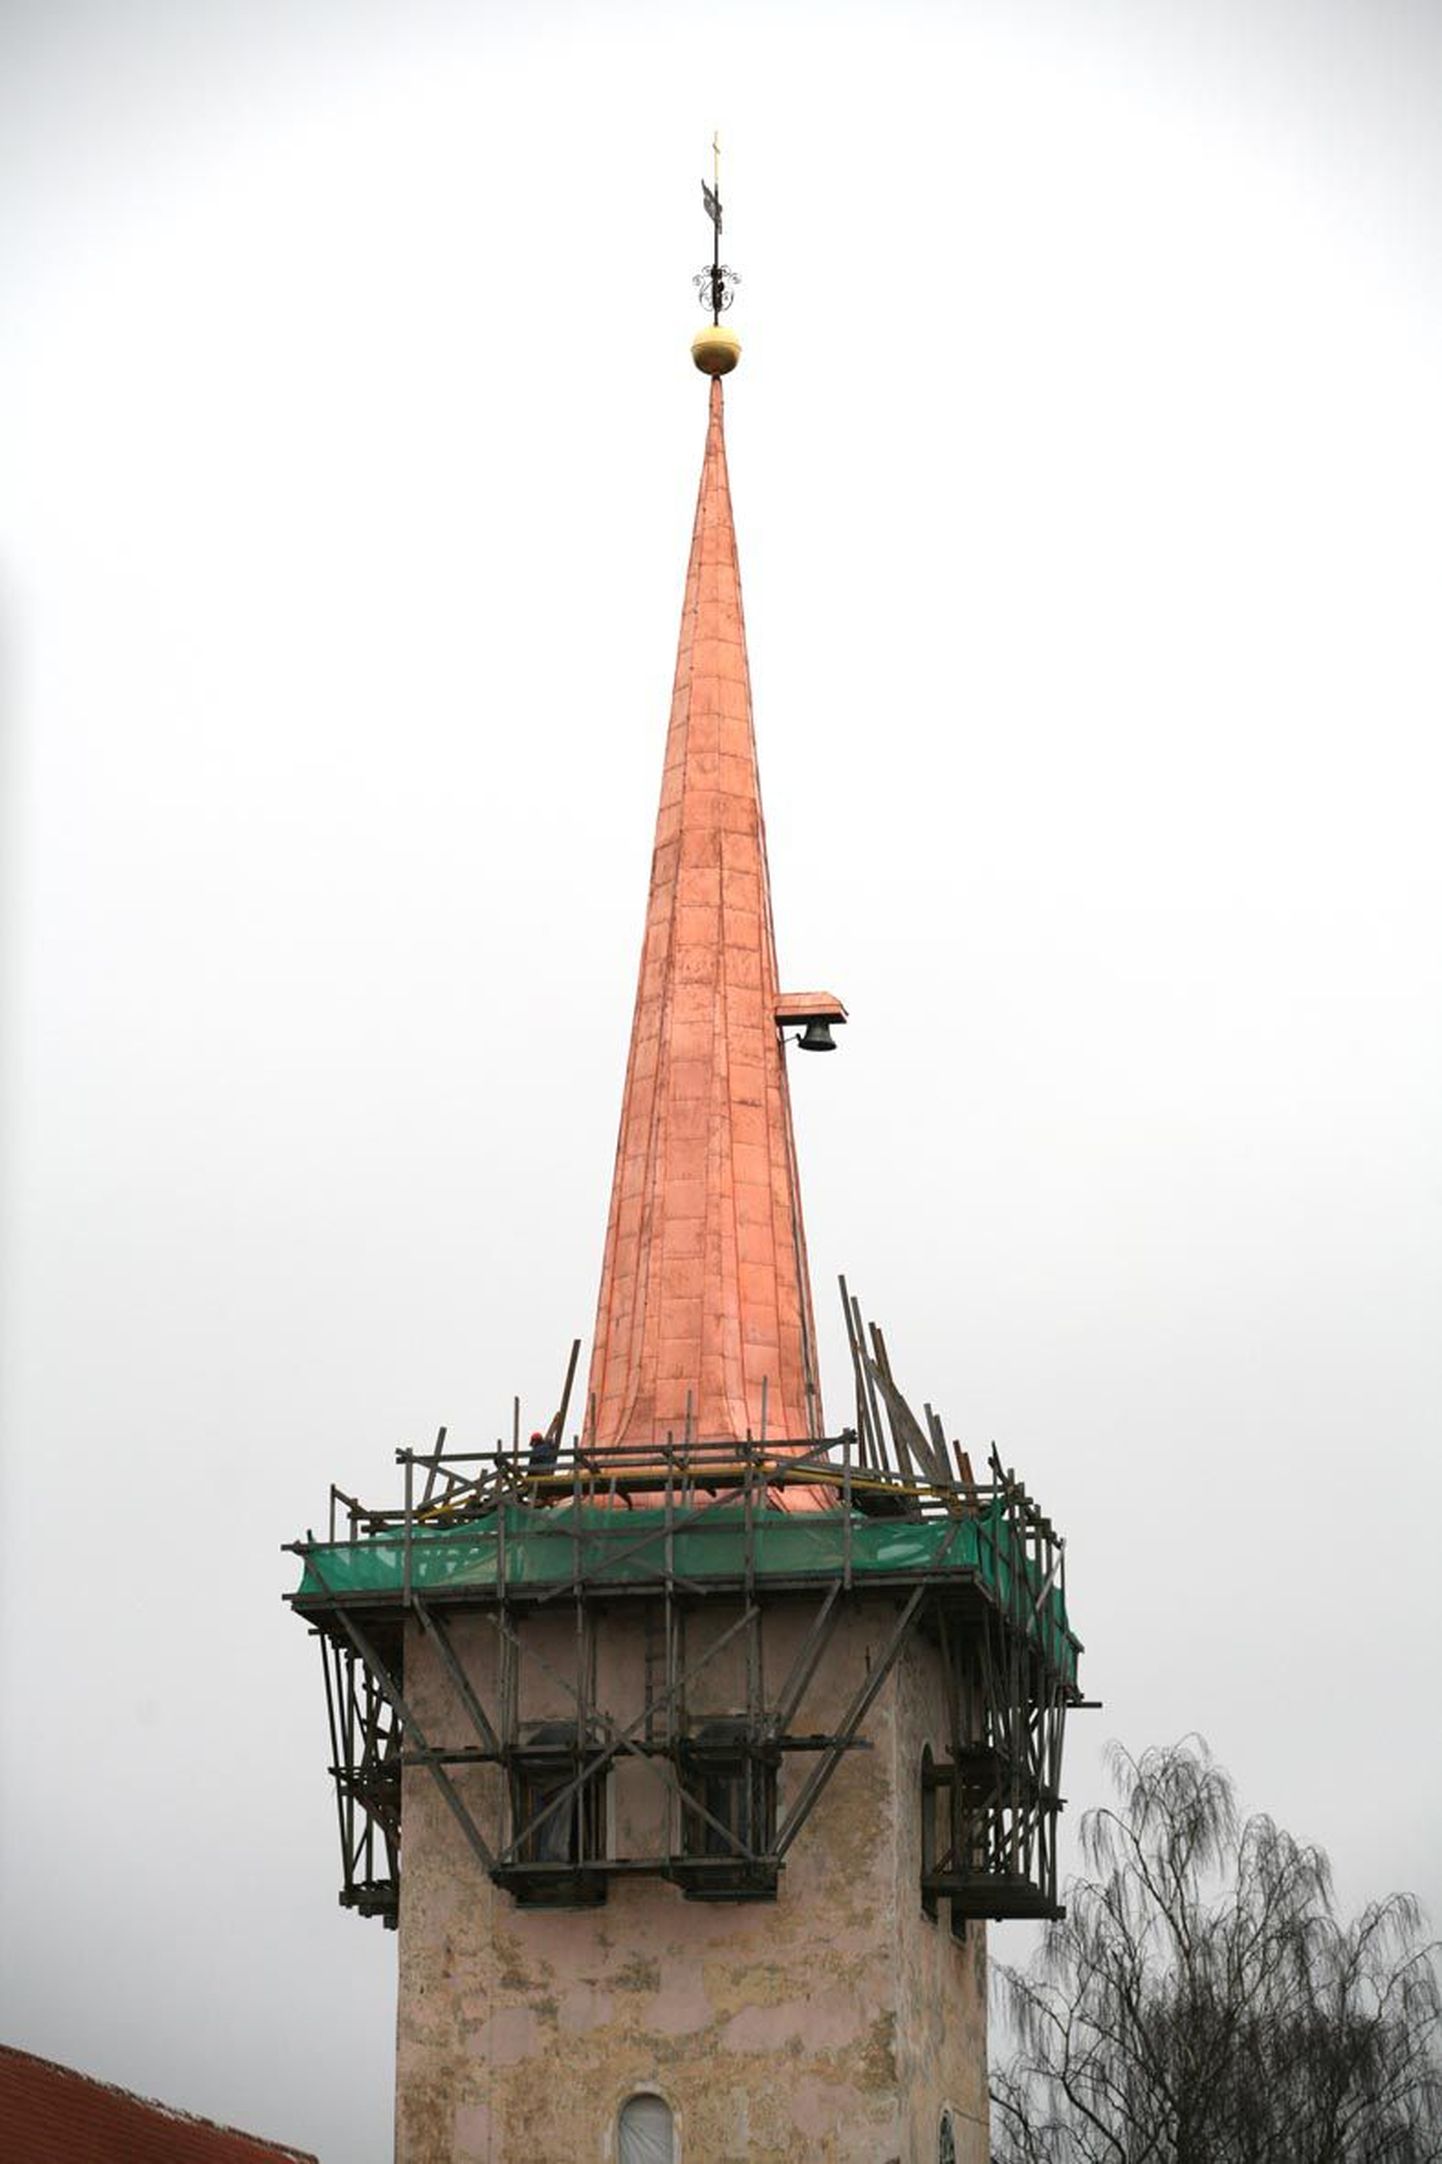 Paide Püha Risti kiriku tornikiivril on nüüd lisaks ennistatud tornikuulile, ristile ja tuulelipule vahetatud ka vaskplekk.